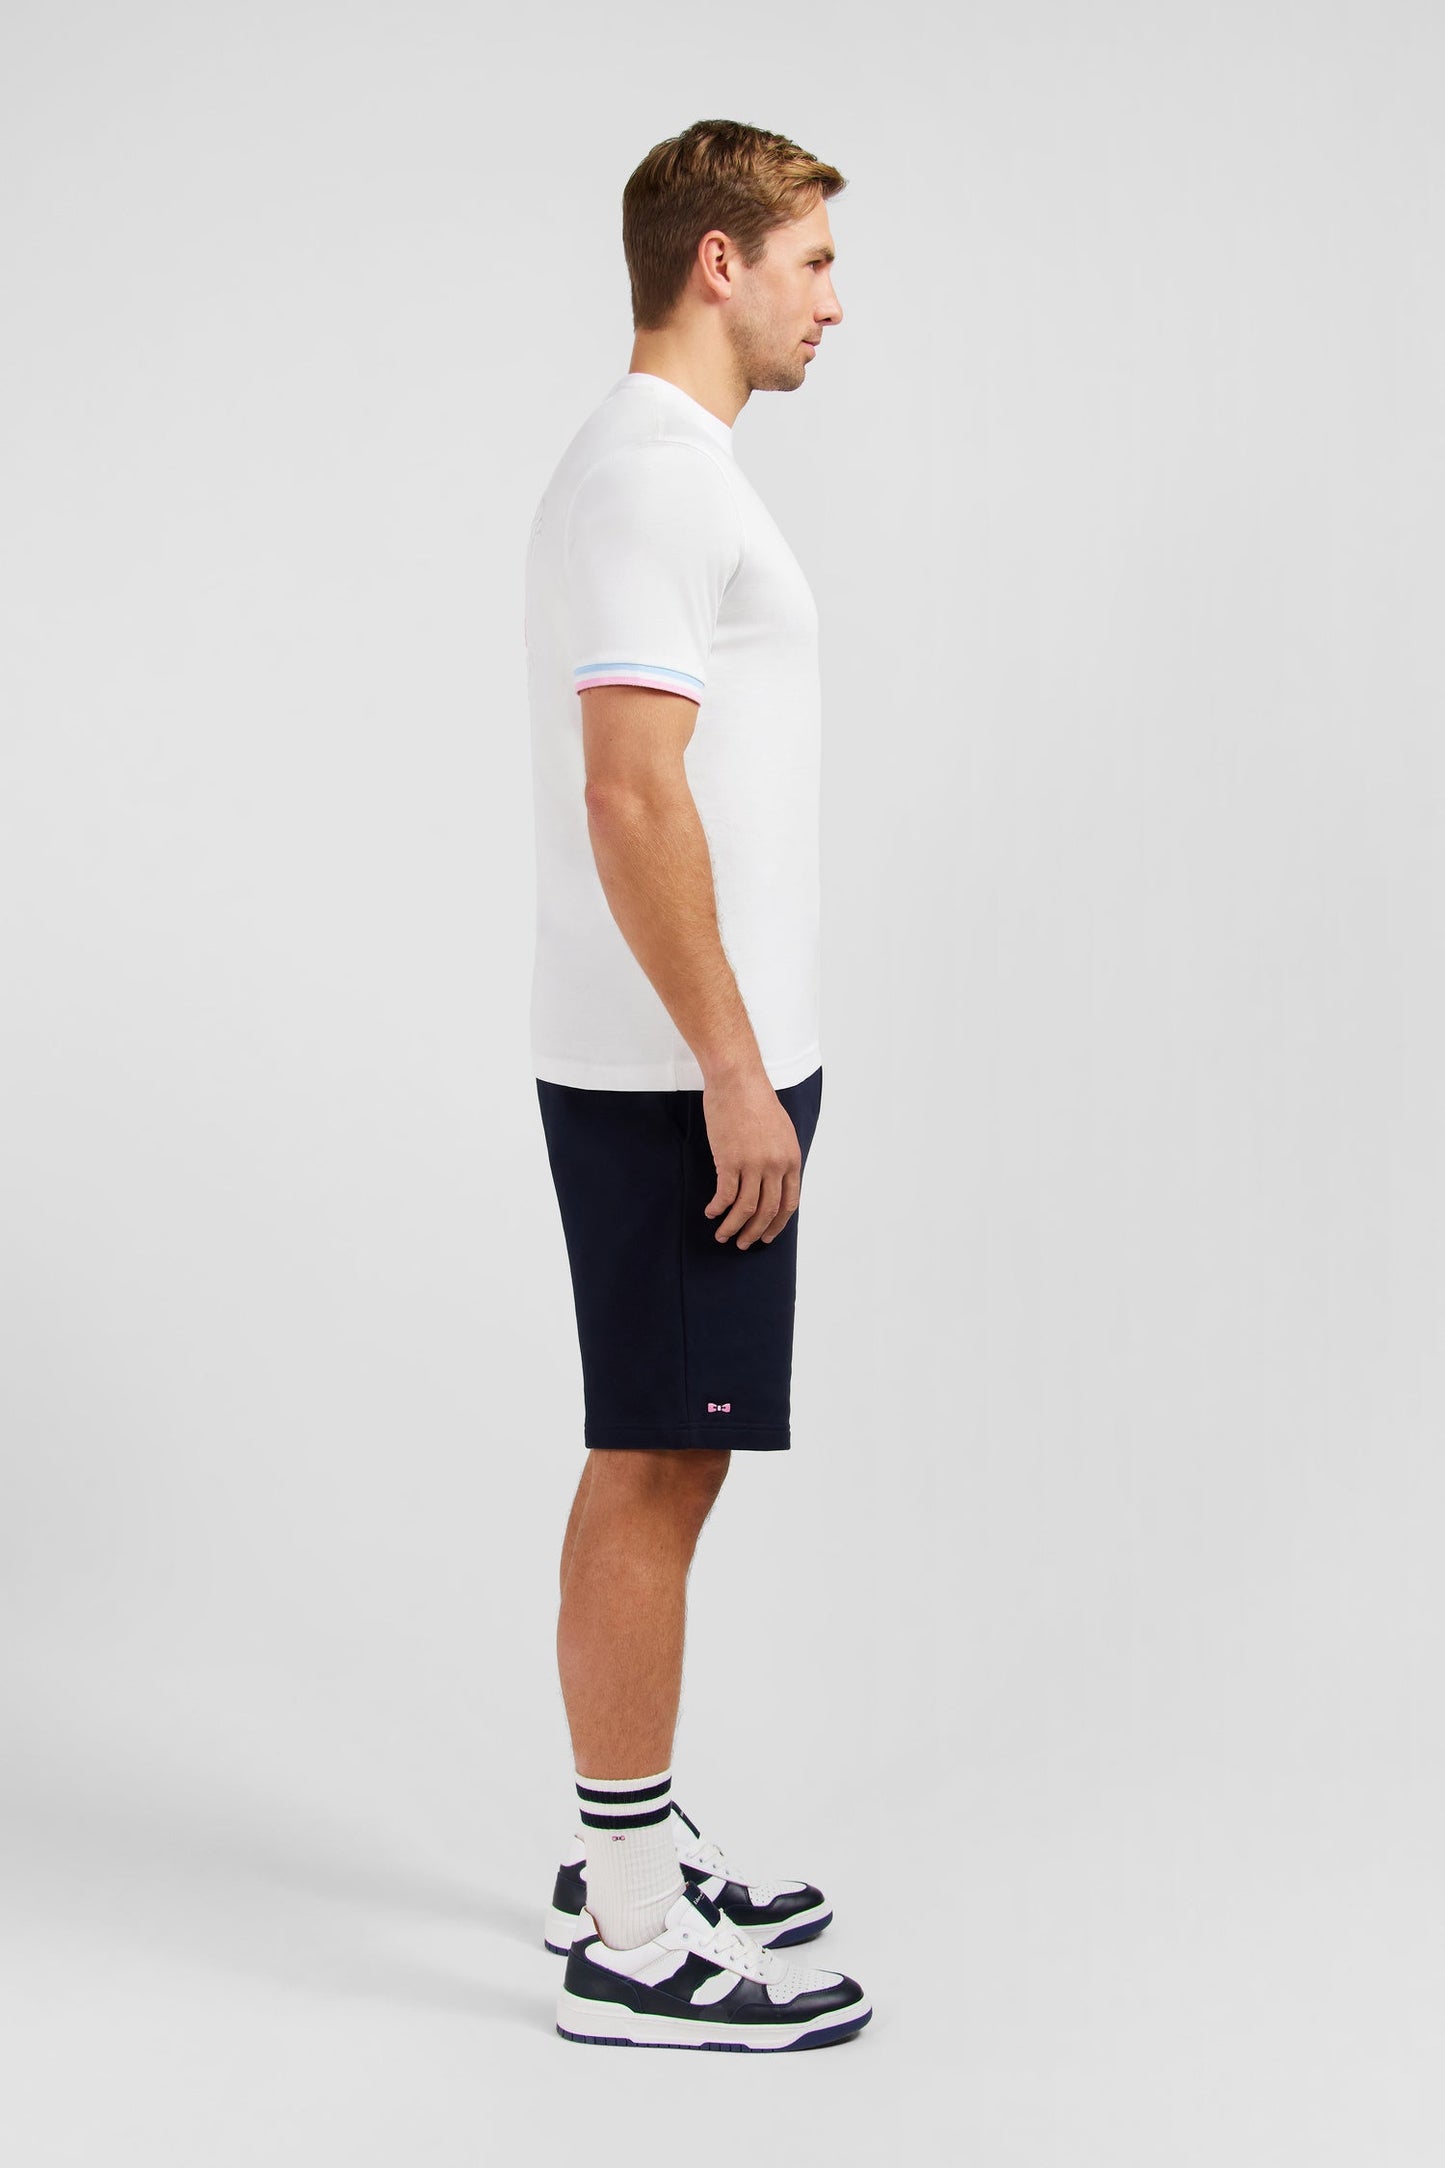 T-shirt manches courtes blanc avec logo reliefé - Image 5